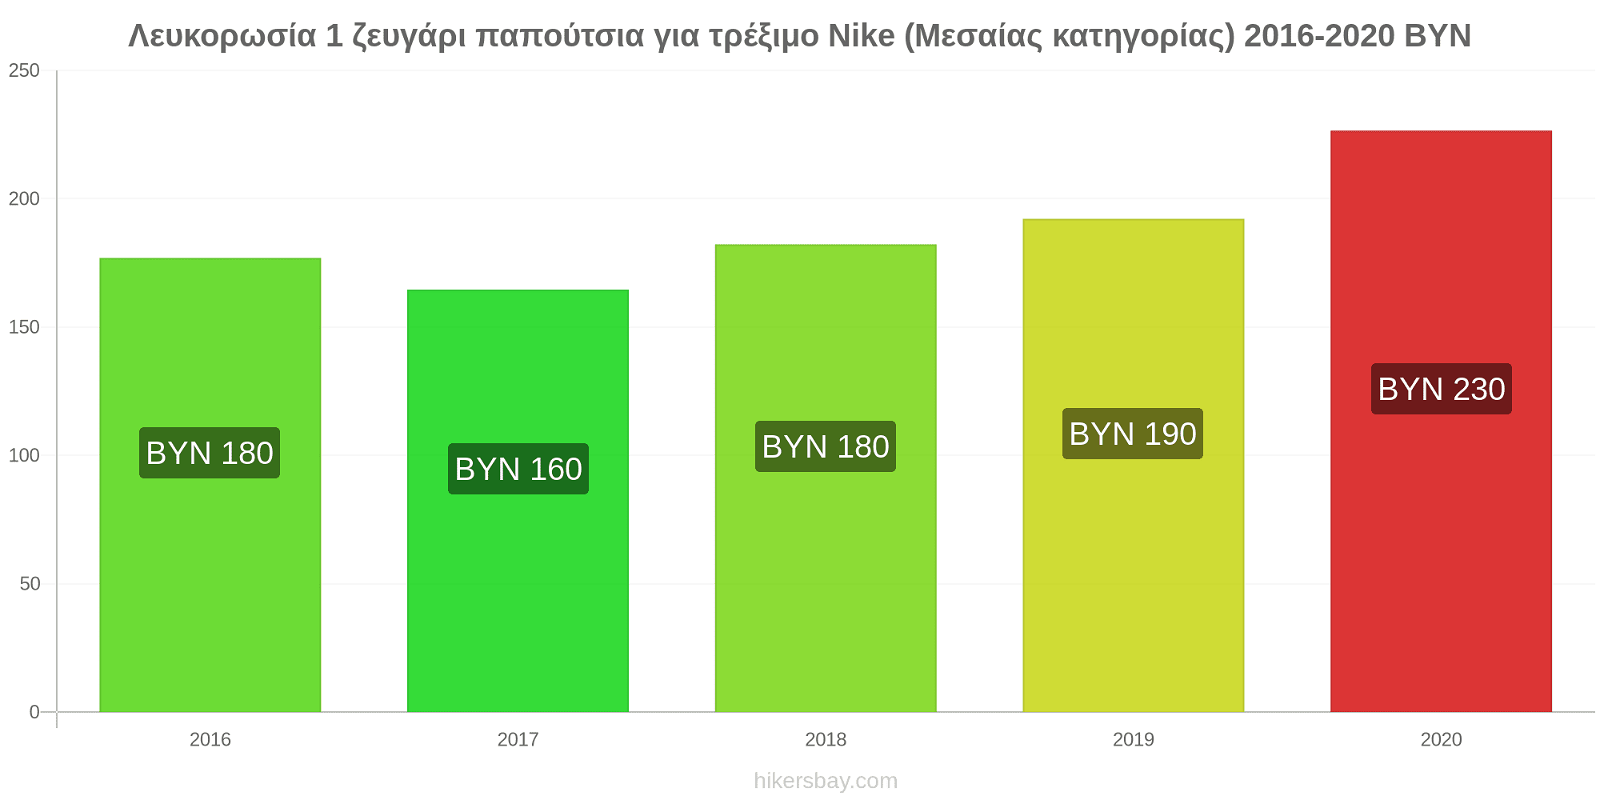 Λευκορωσία αλλαγές τιμών 1 ζευγάρι παπούτσια για τρέξιμο Nike (Μεσαίας κατηγορίας) hikersbay.com